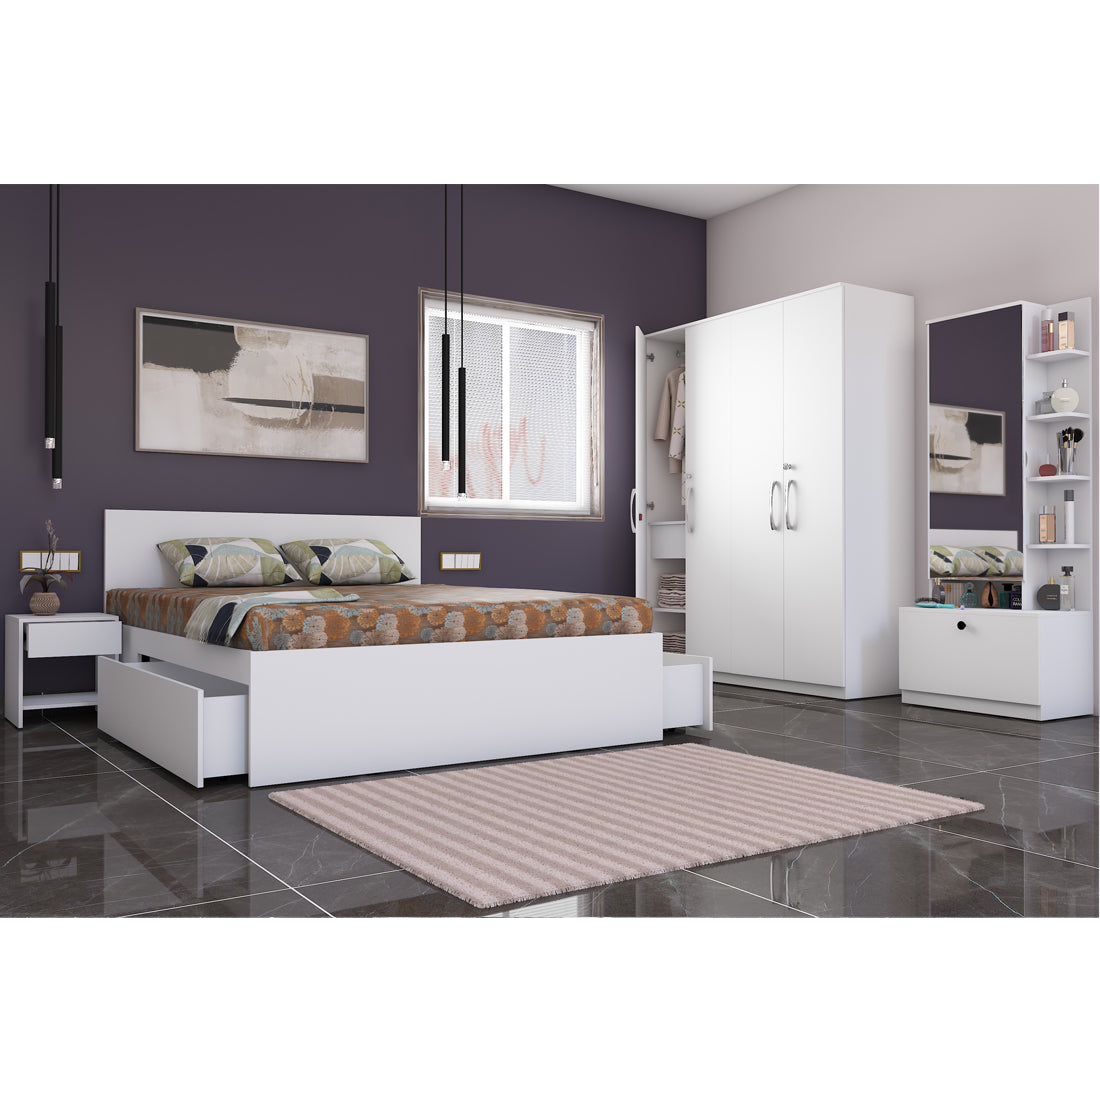 Optima 05: Set of 5 Bedroom Furniture - 4 door Wardrobe, Queen Bed, Dresser and Side Tables